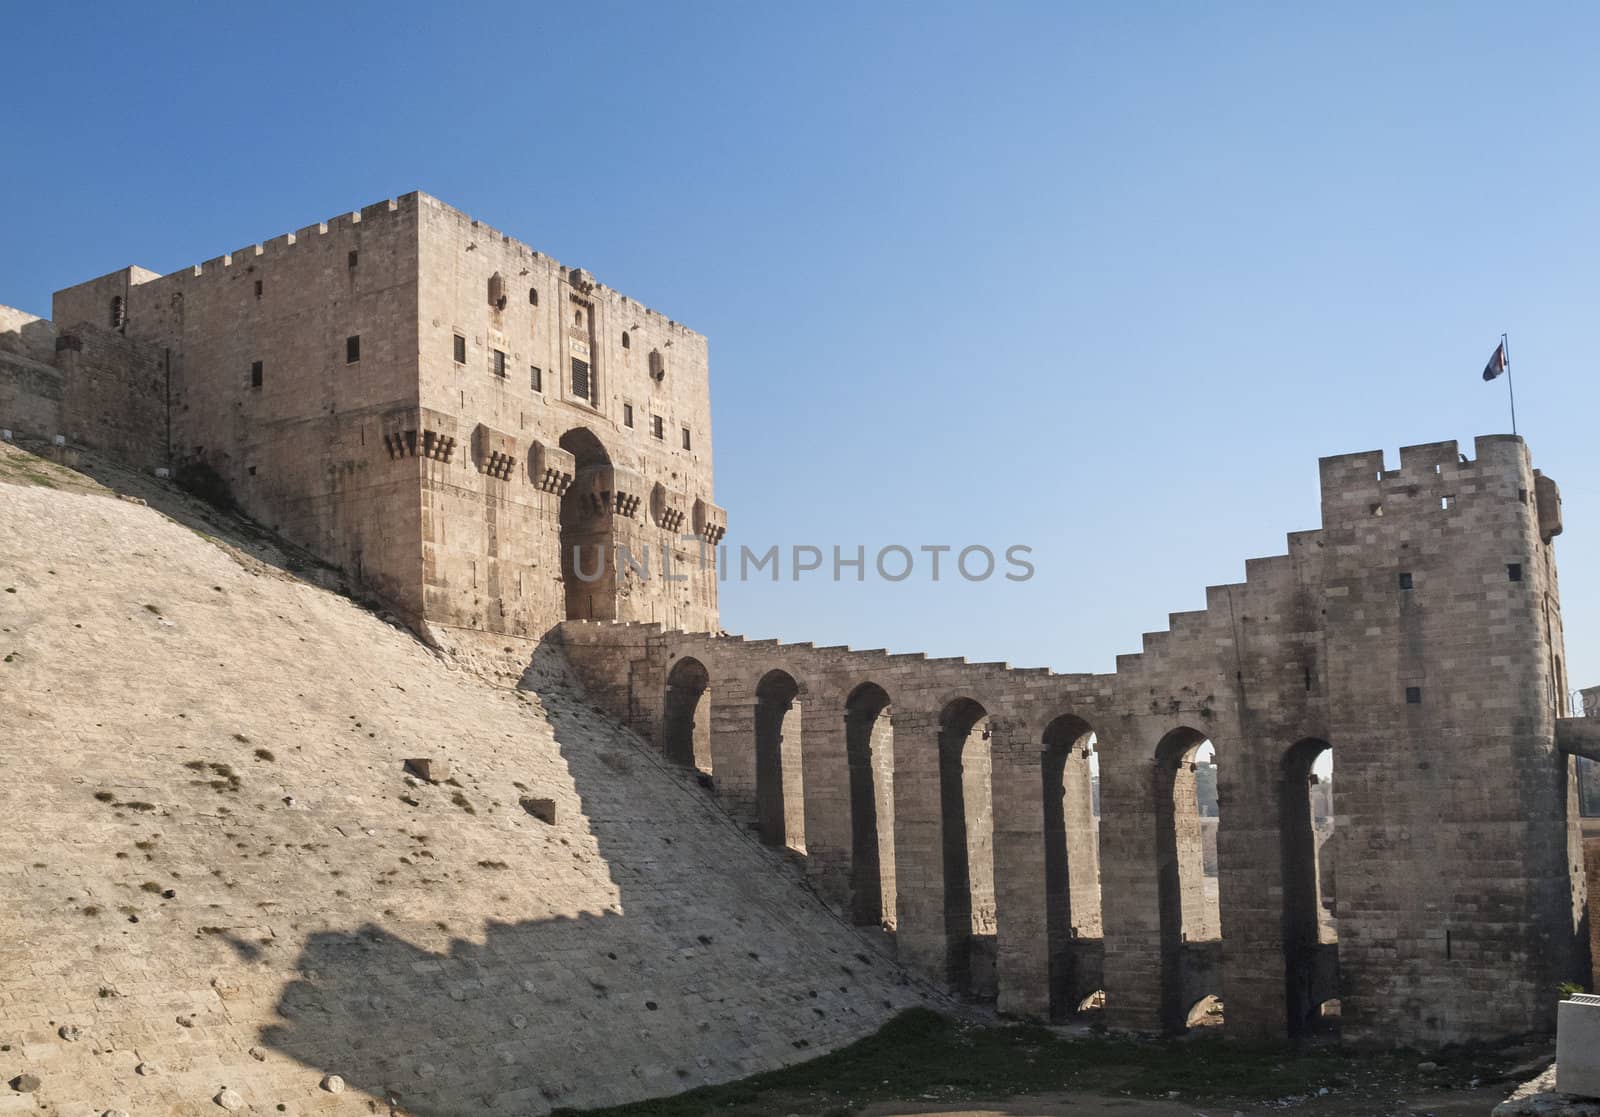 aleppo ancient citadel in syria